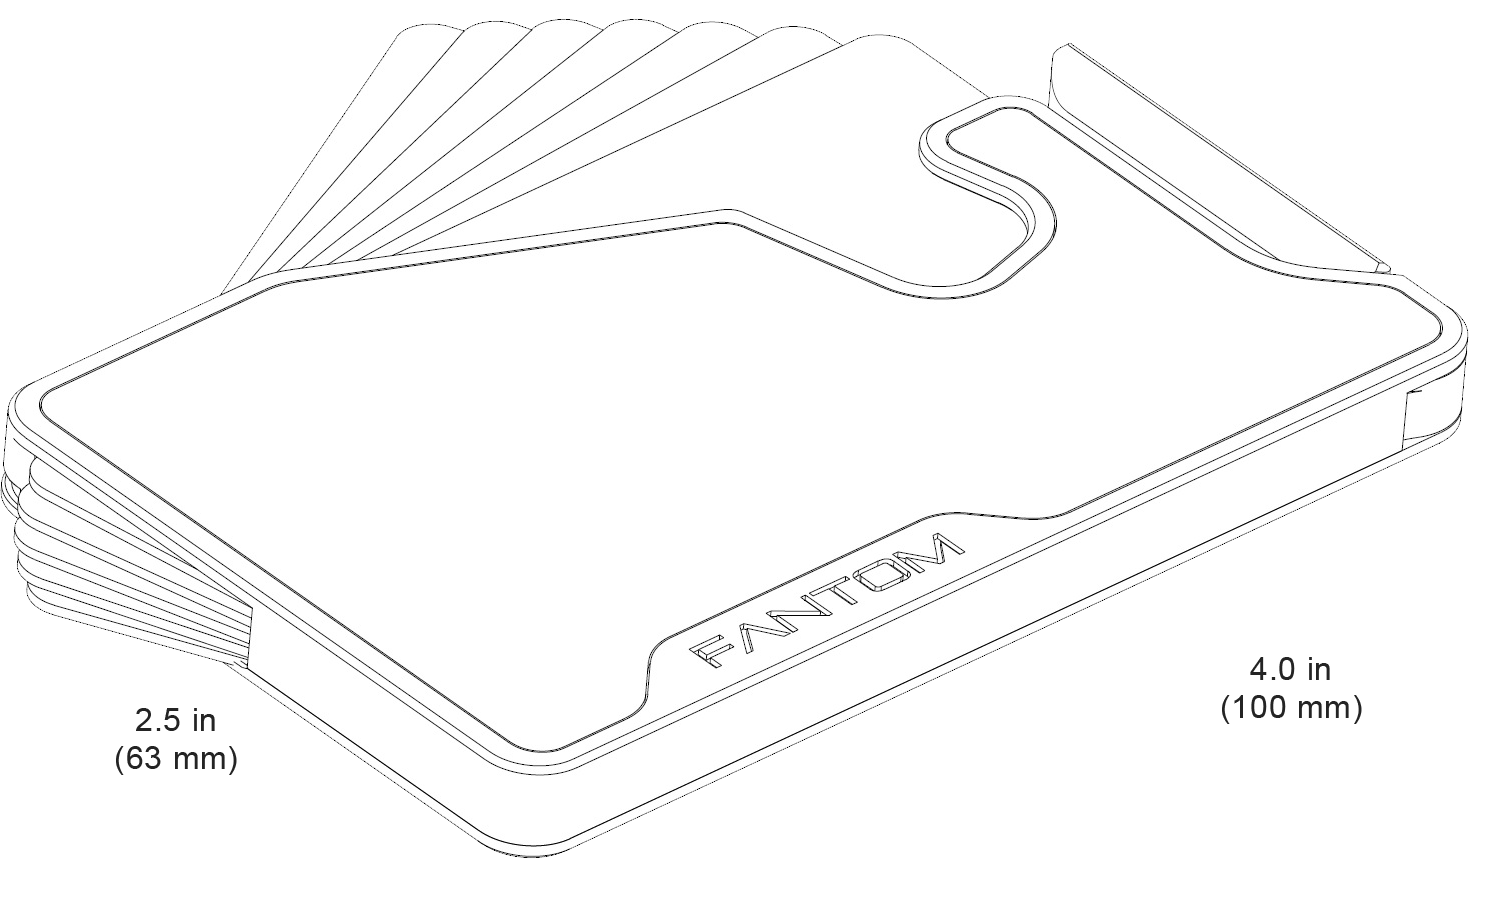 FANTOM X - Silicone Band - Fantom Wallet